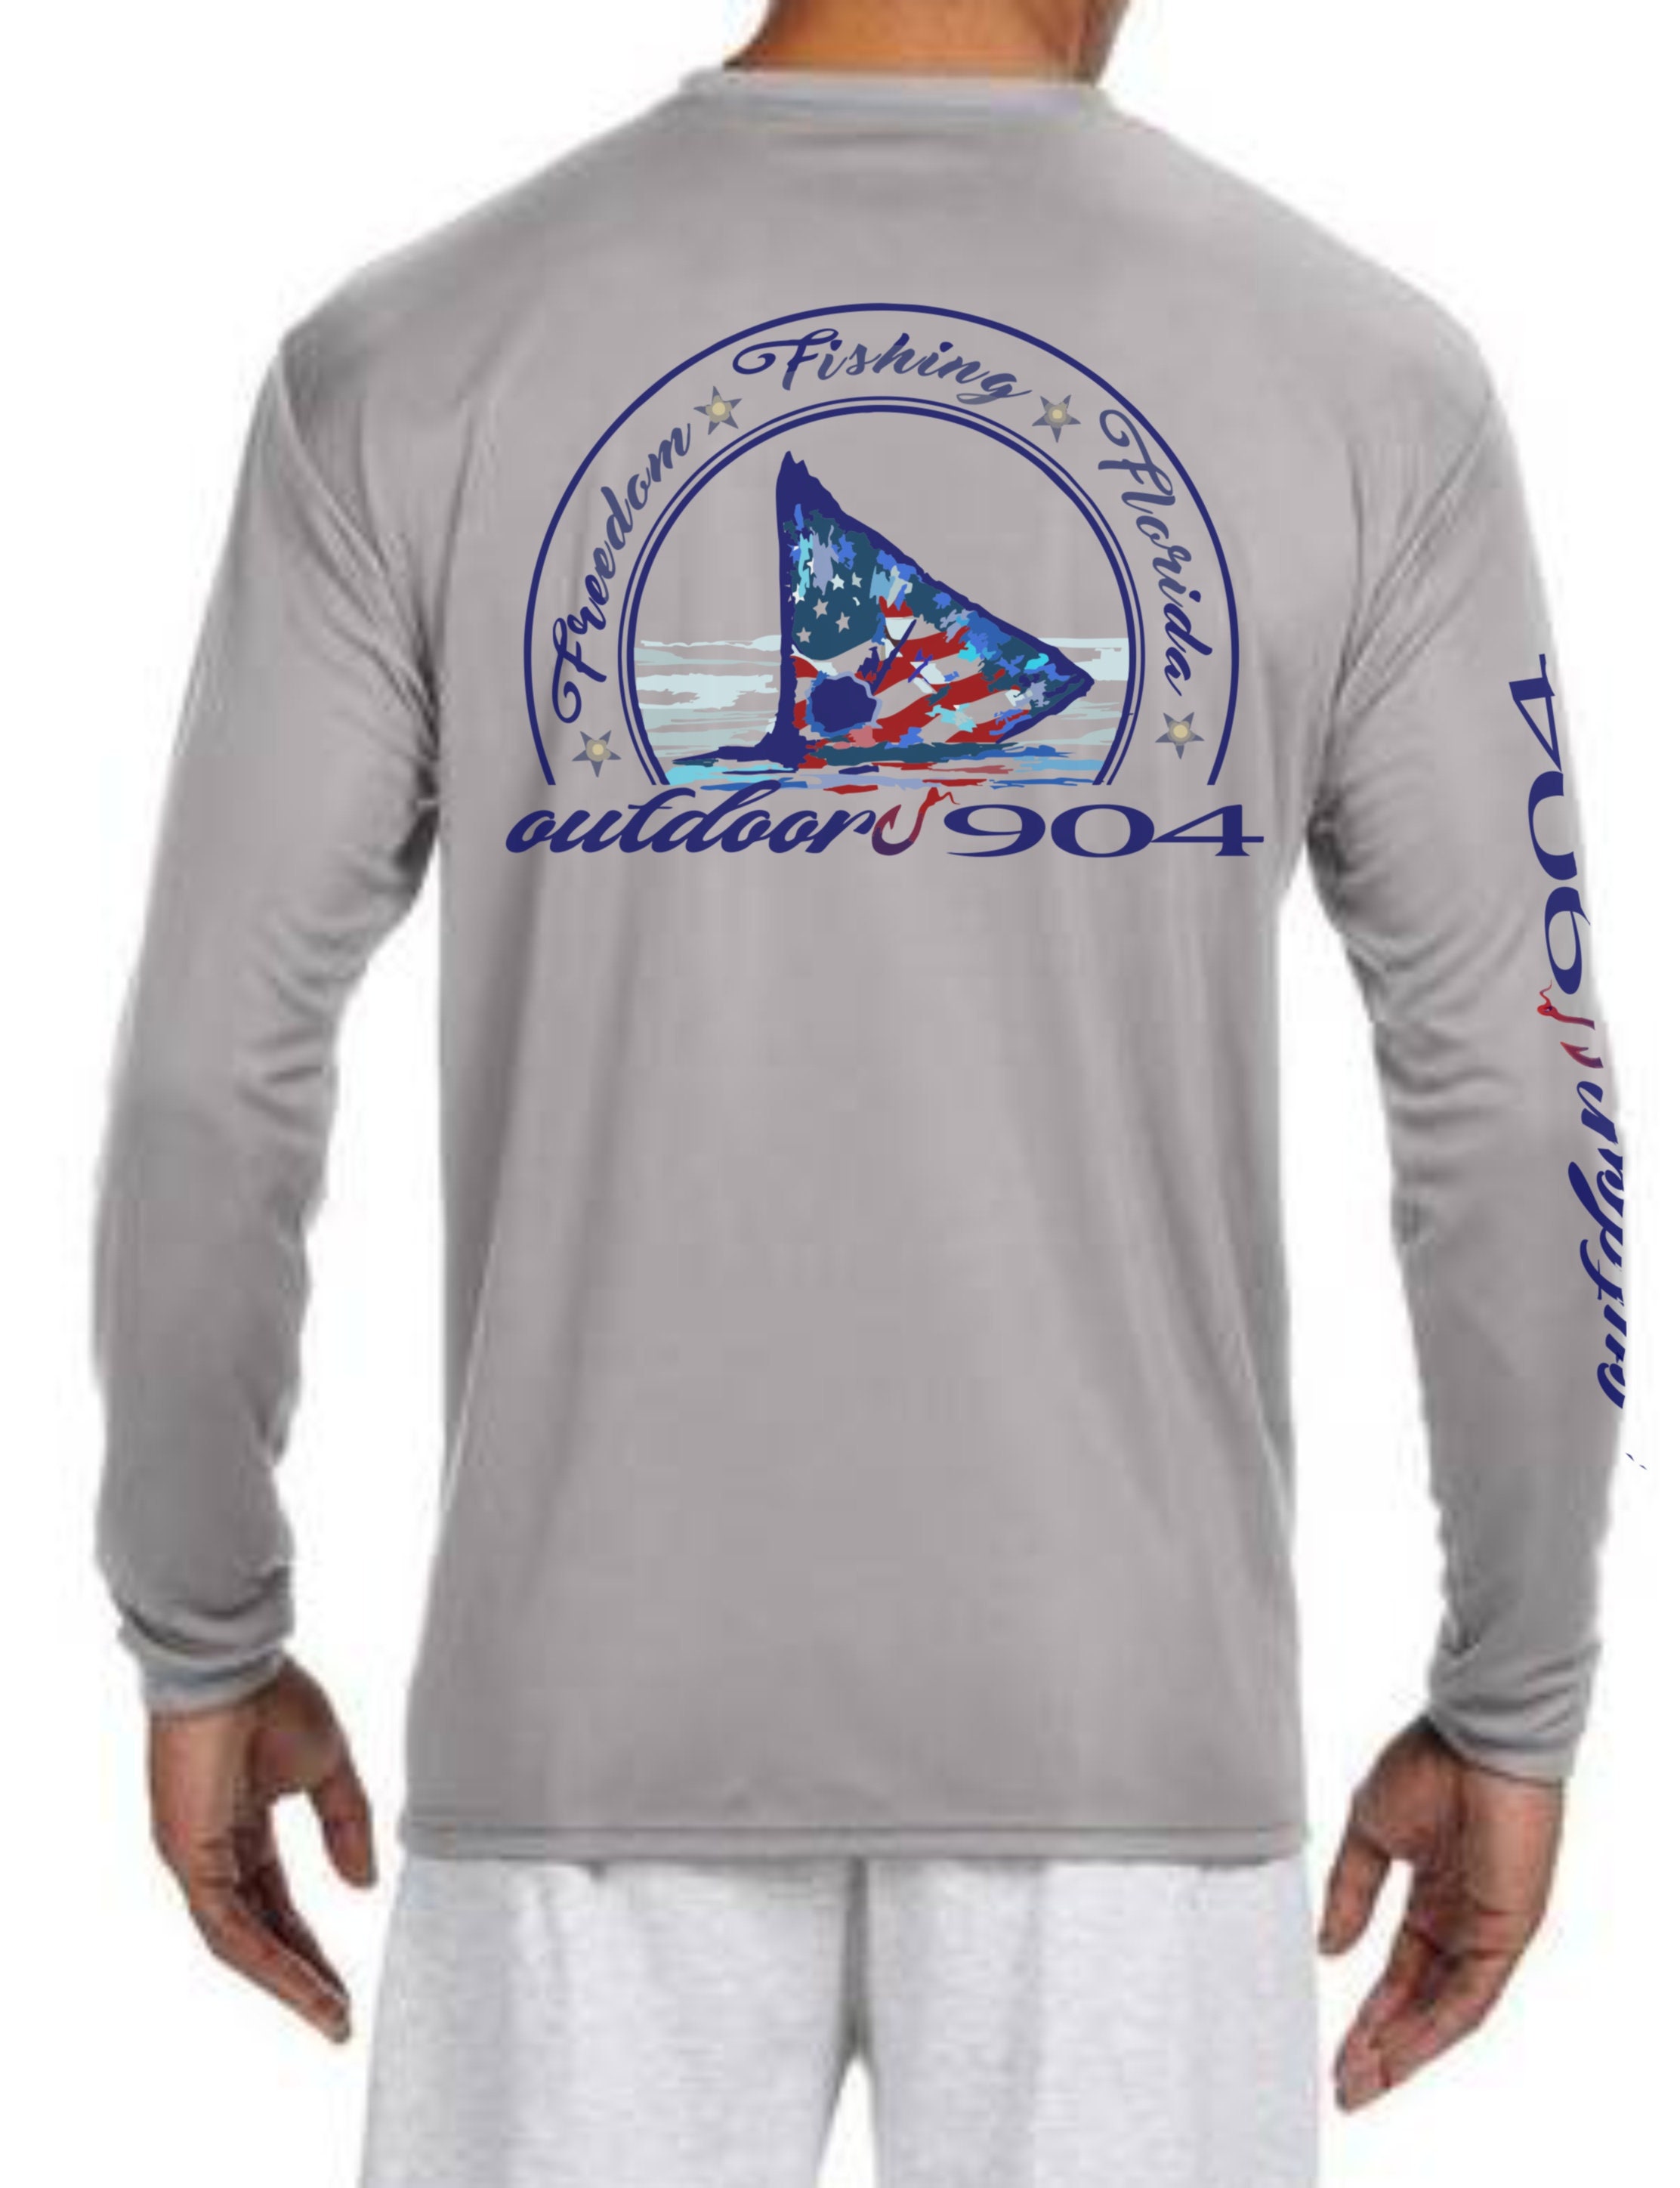 Dirty Hooker Fishing Shirts for Women Classic Logo - SPF Shirts for Women  Long Sleeve - Uv Protection Shirts for Women